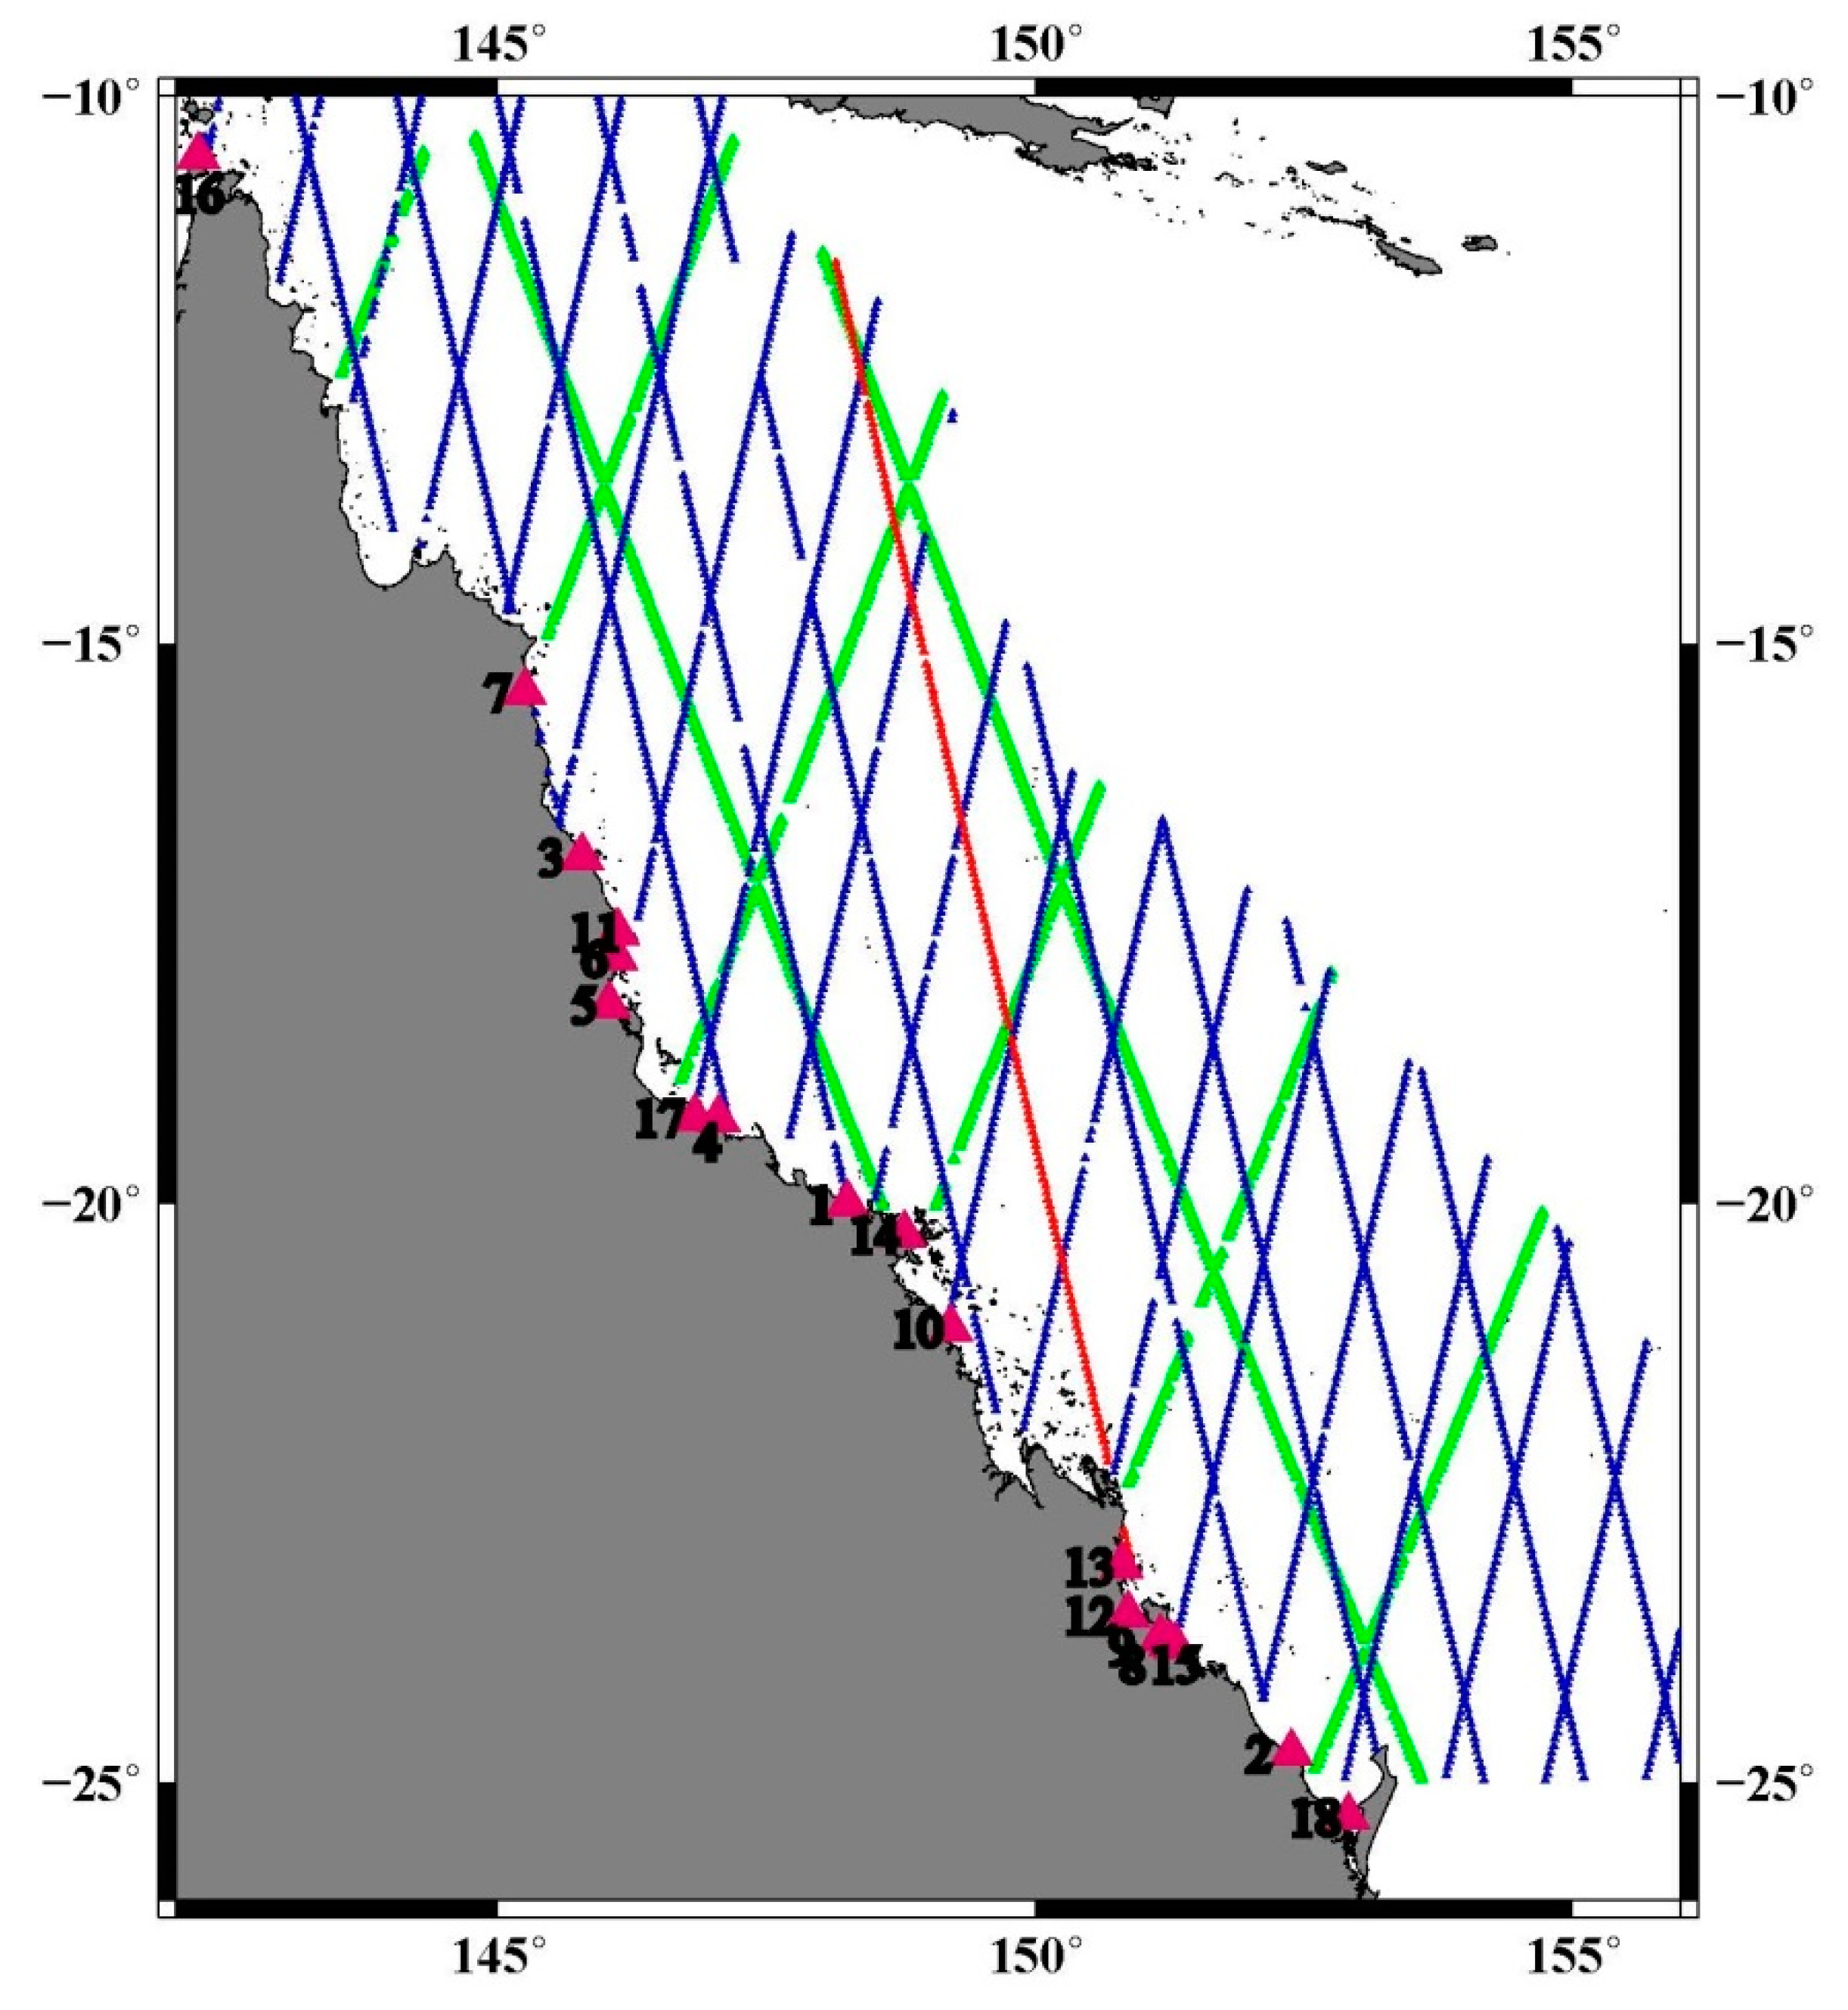 tide graph display